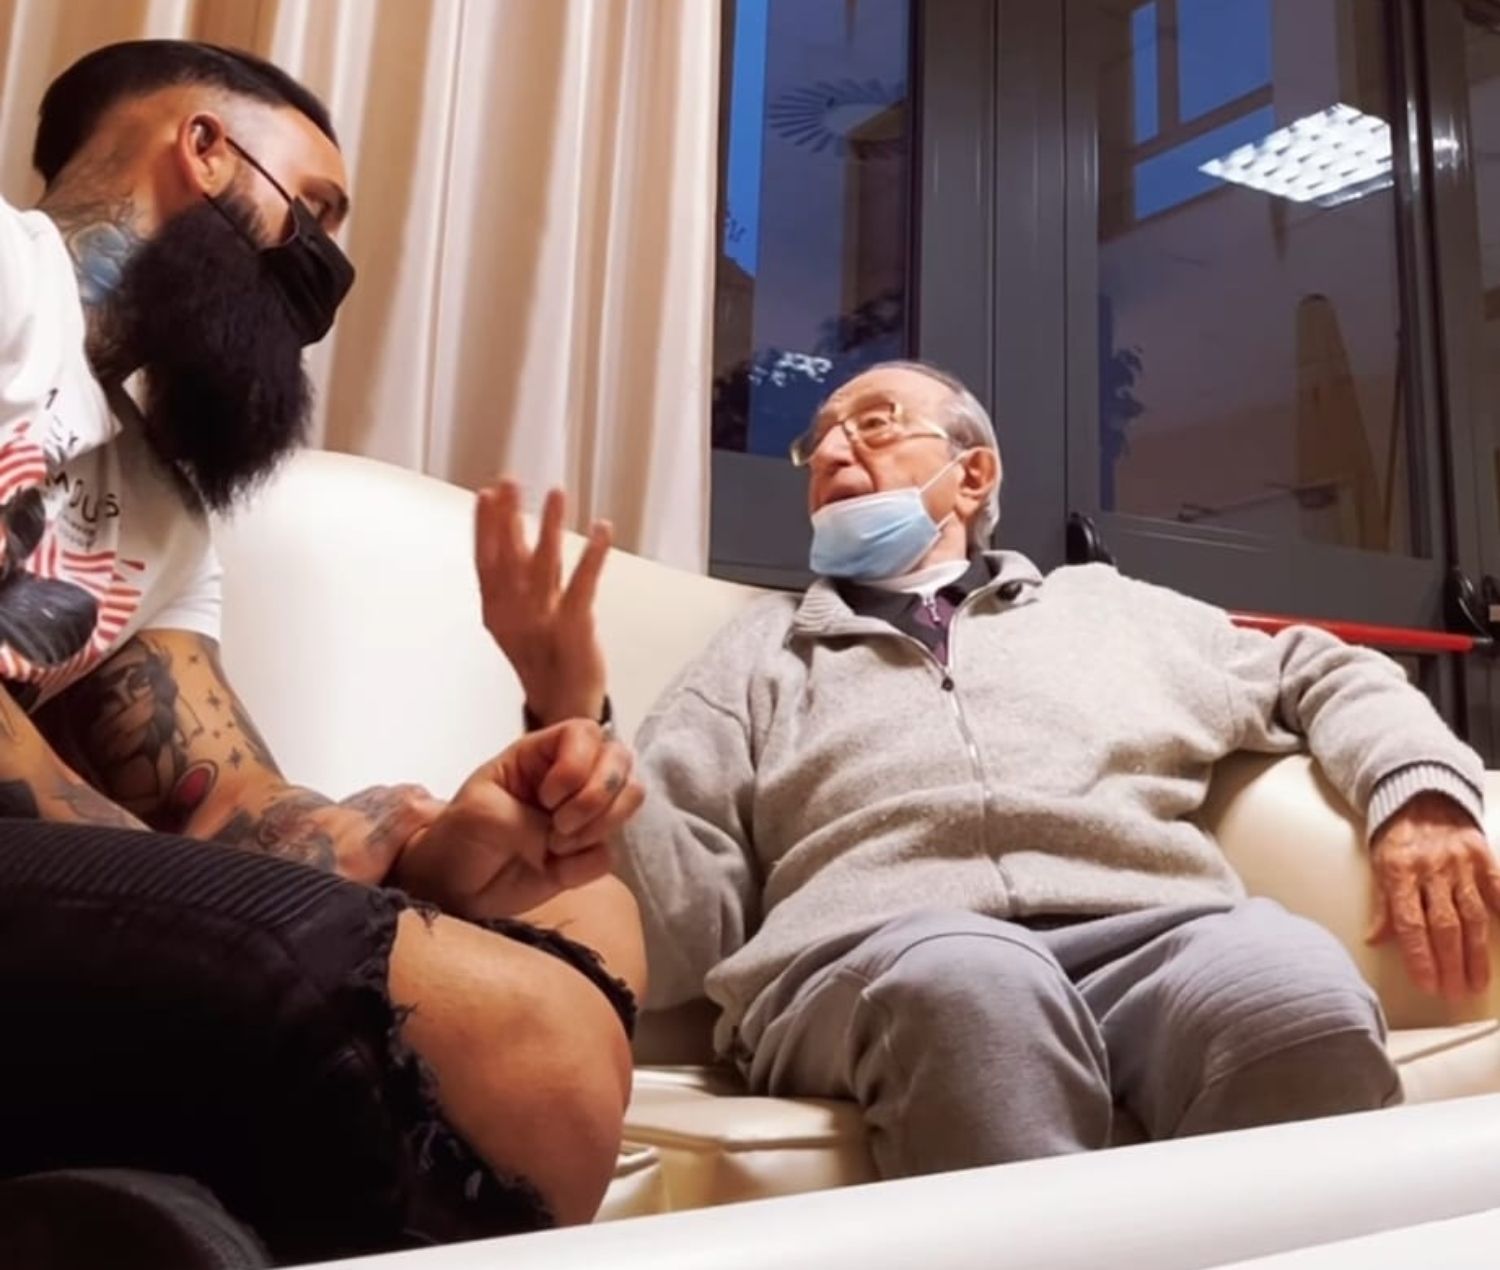 La conversación entre nieto y abuelo que se ha hecho viral: "El Alzheimer no podrá con nosotros"